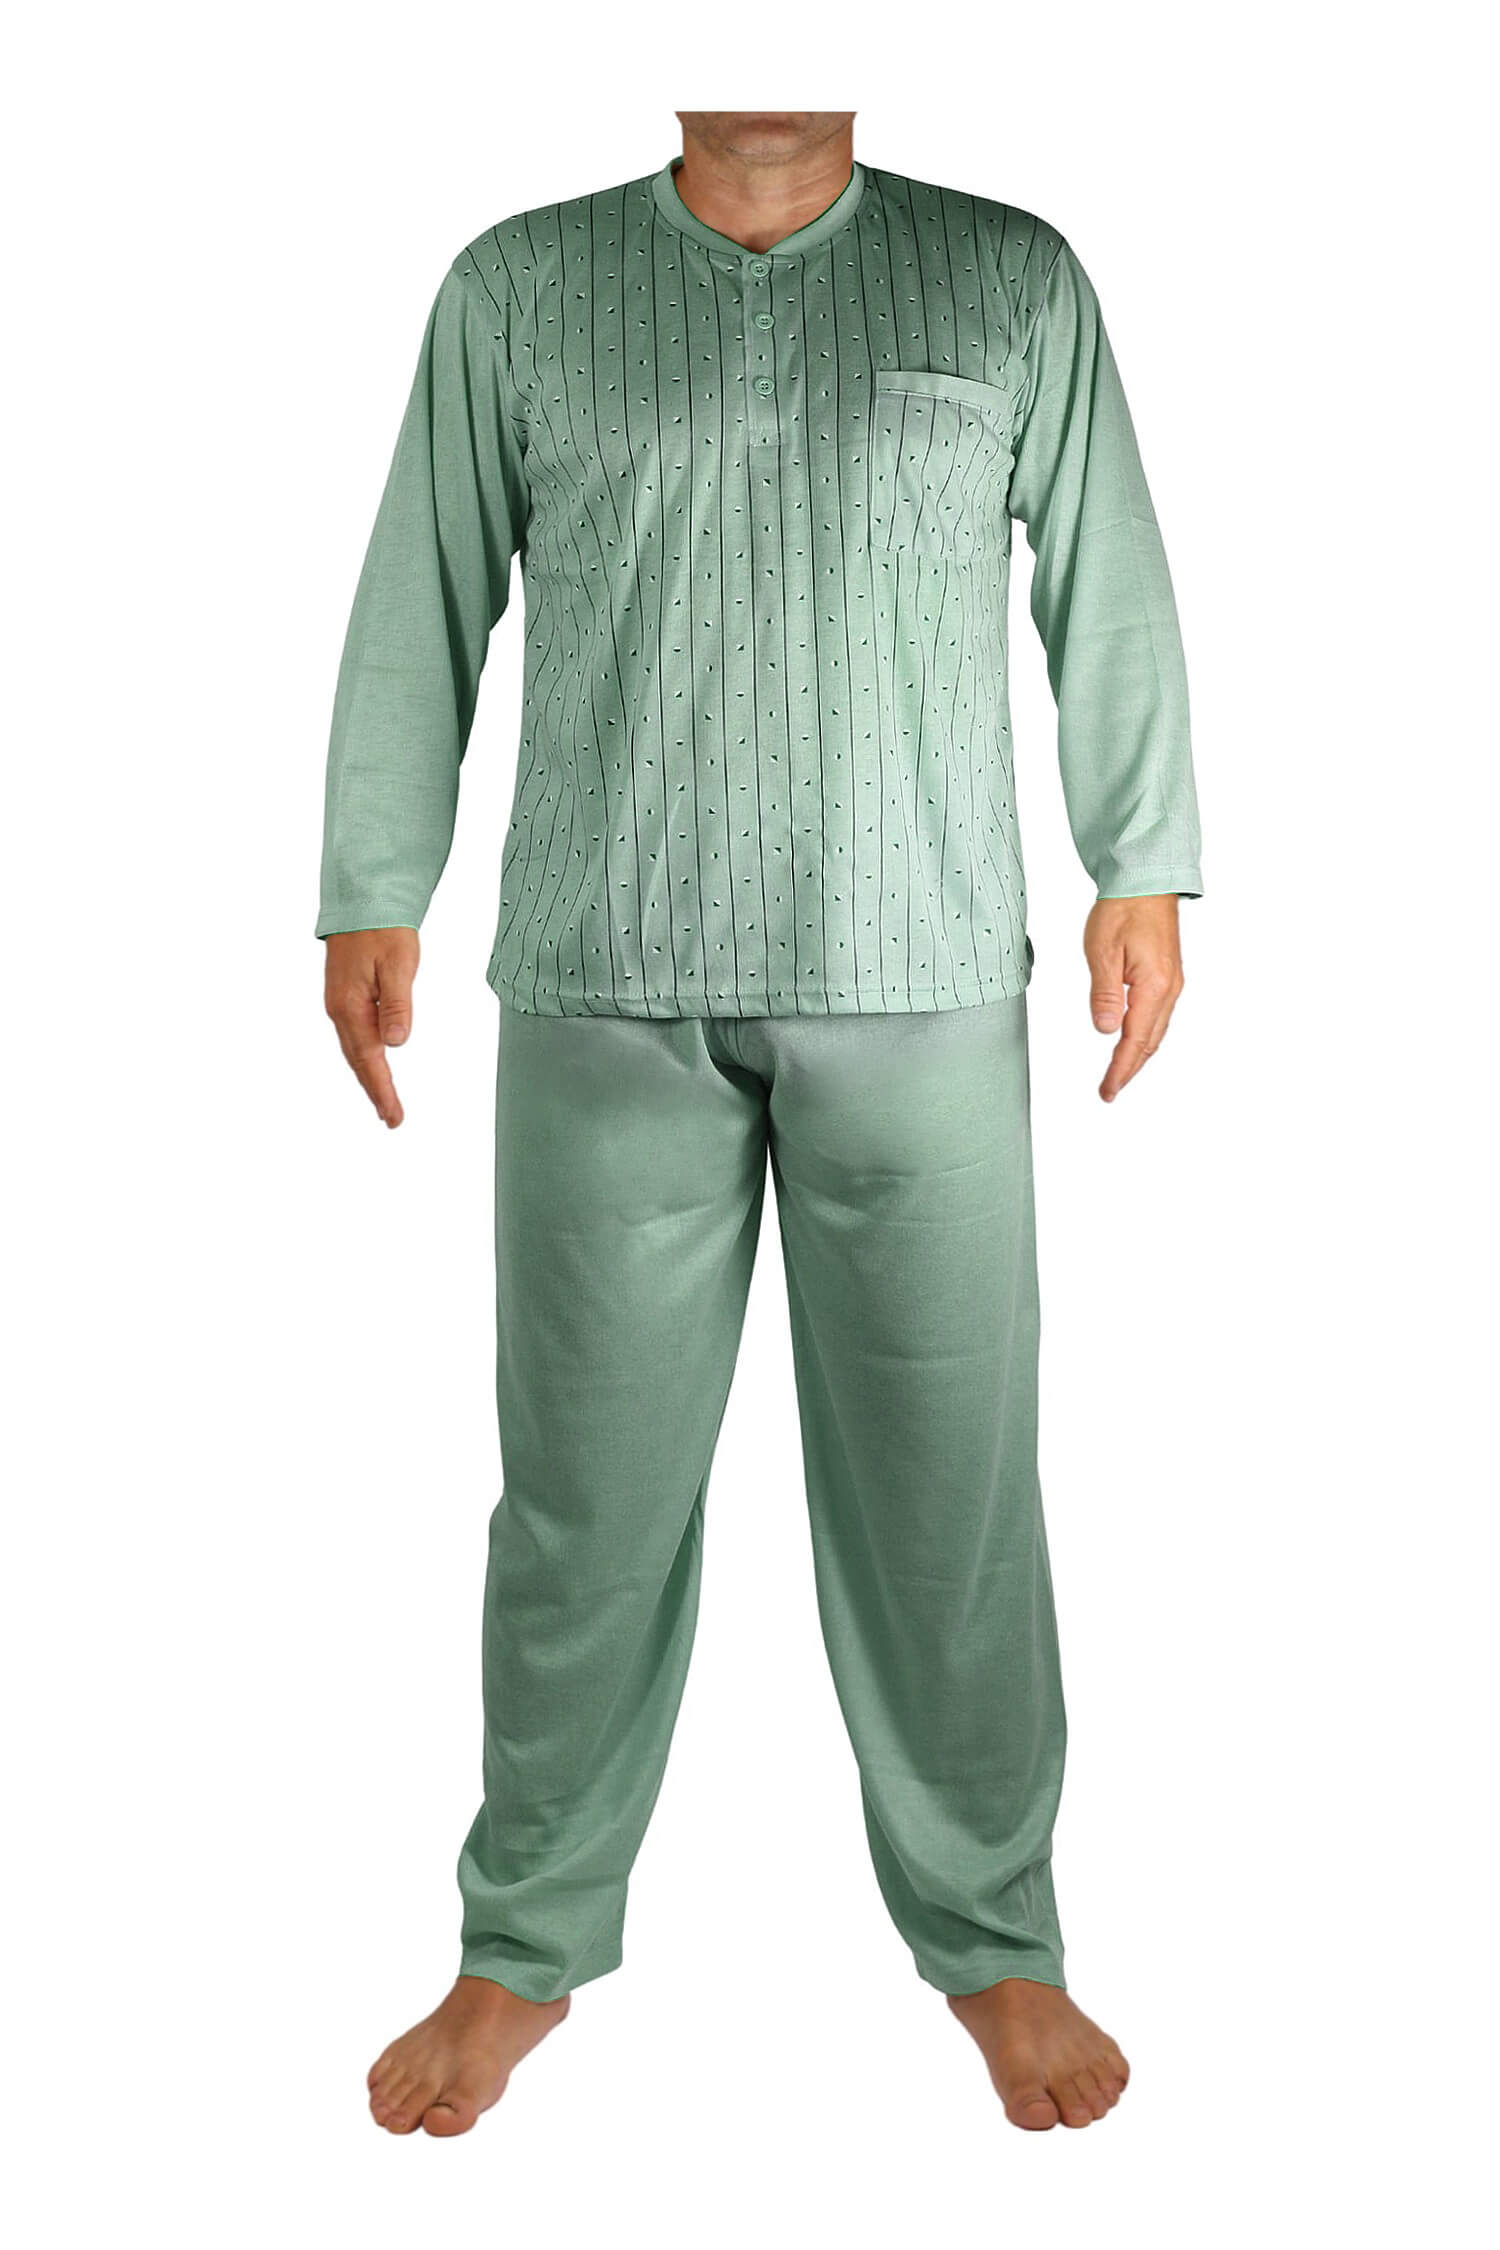 Ludvík pyžamo pánské dlouhé V1974 zelená 3XL